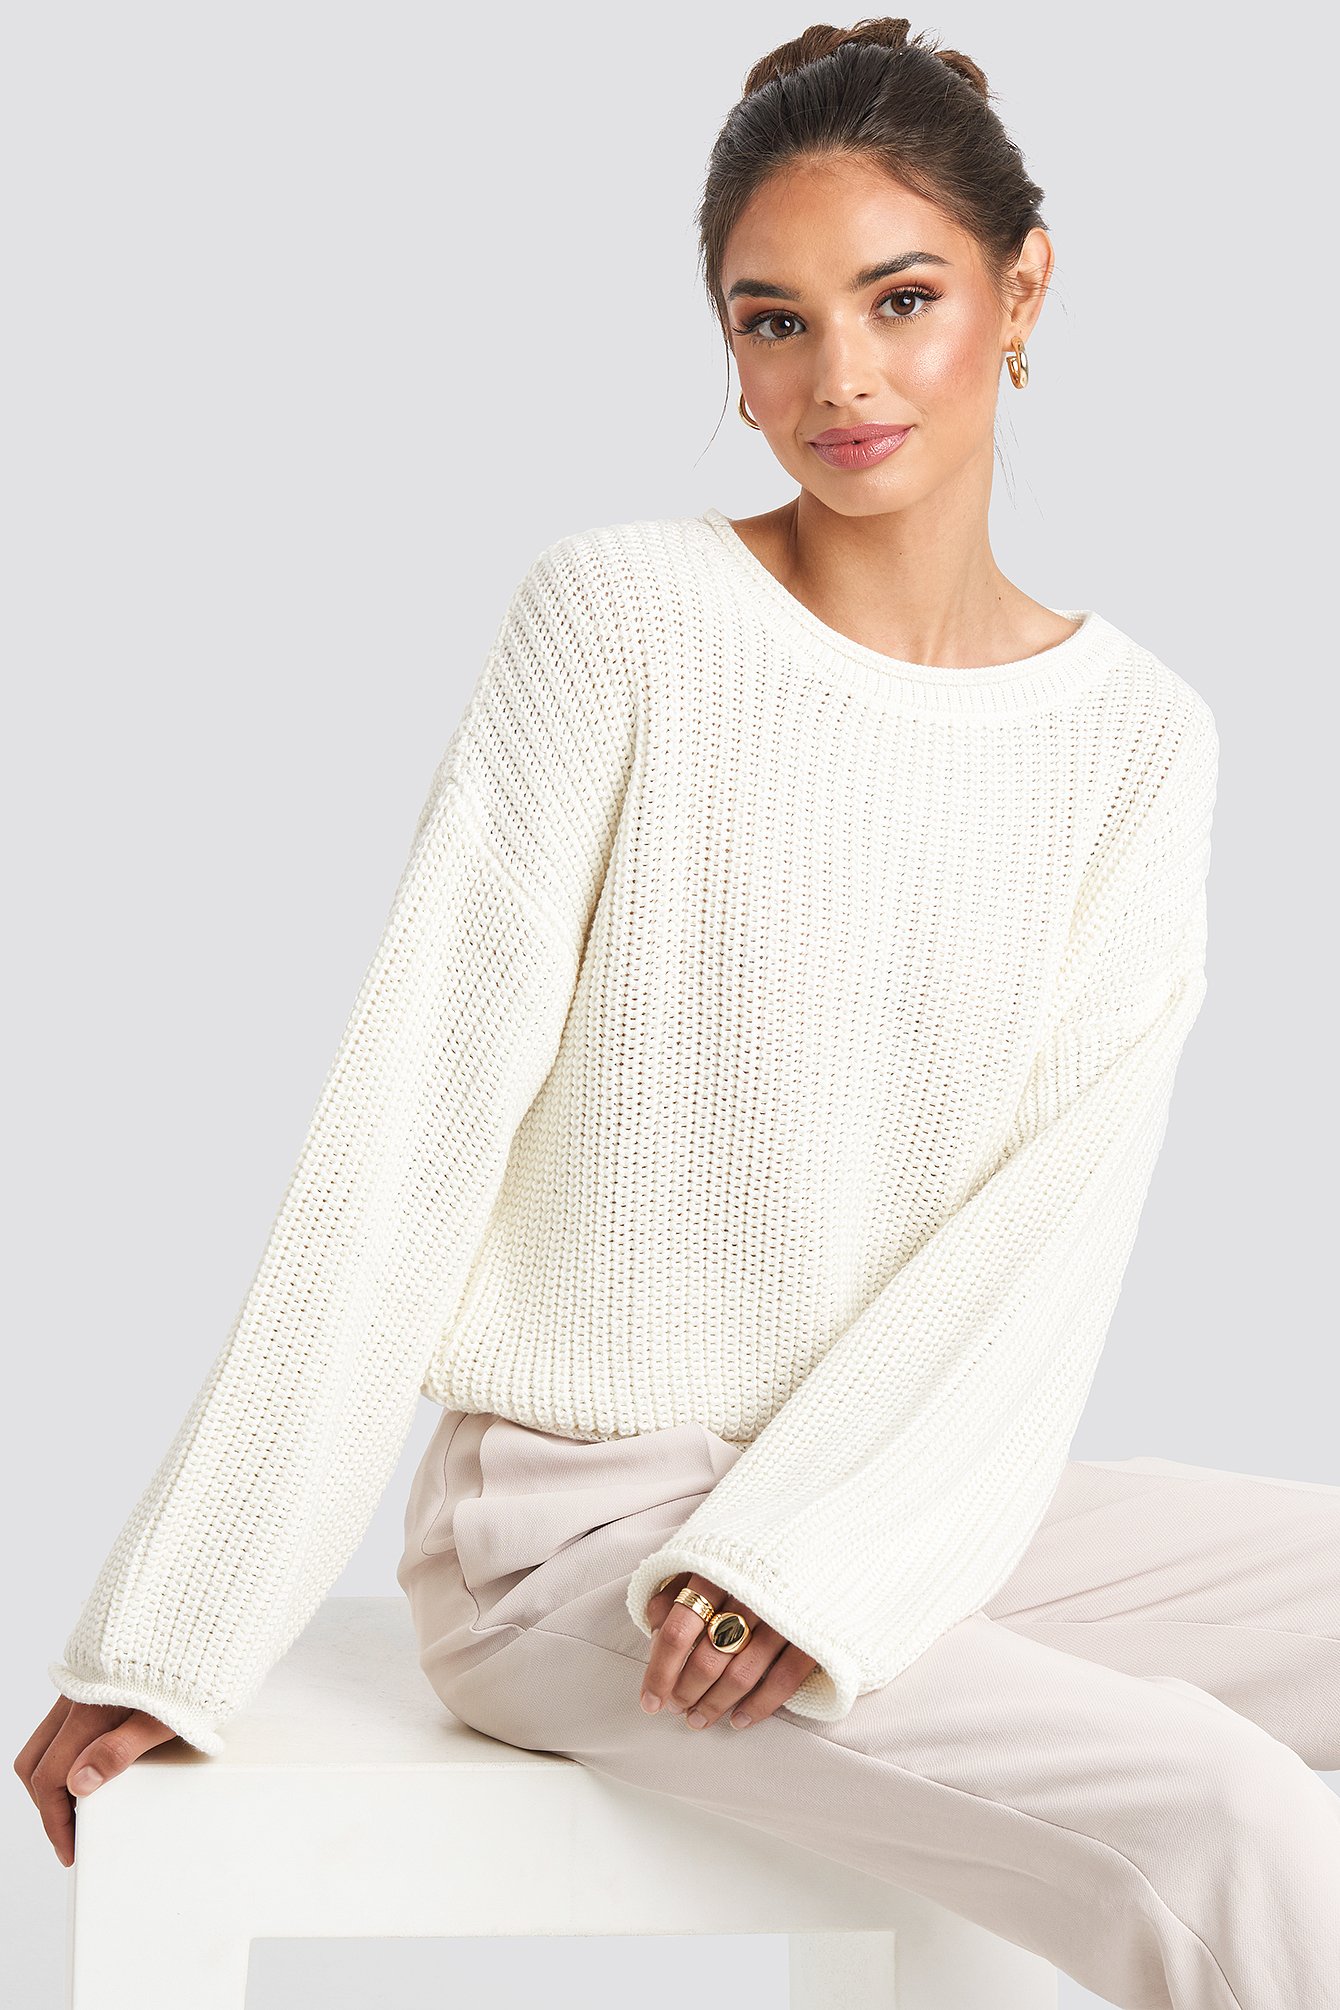 White sweater - Finn den beste prisen på Prisjakt